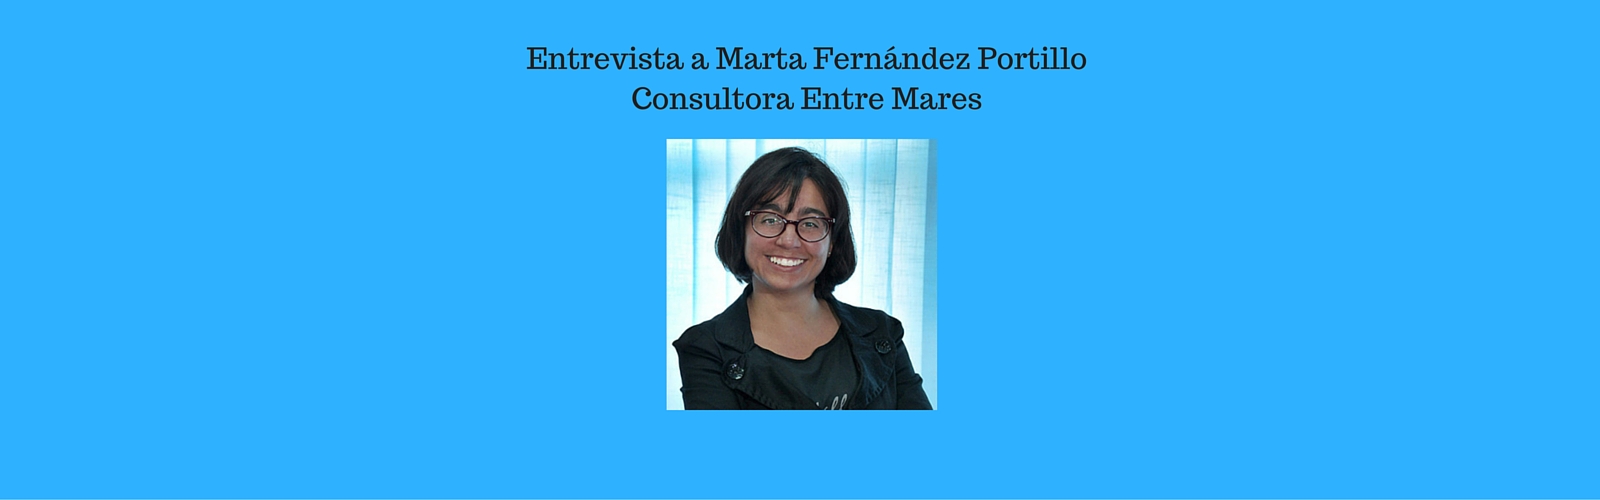 Entrevista a Marta Fernández Portillo, Consultora para la mejora profesional y Docente de Entre Mares